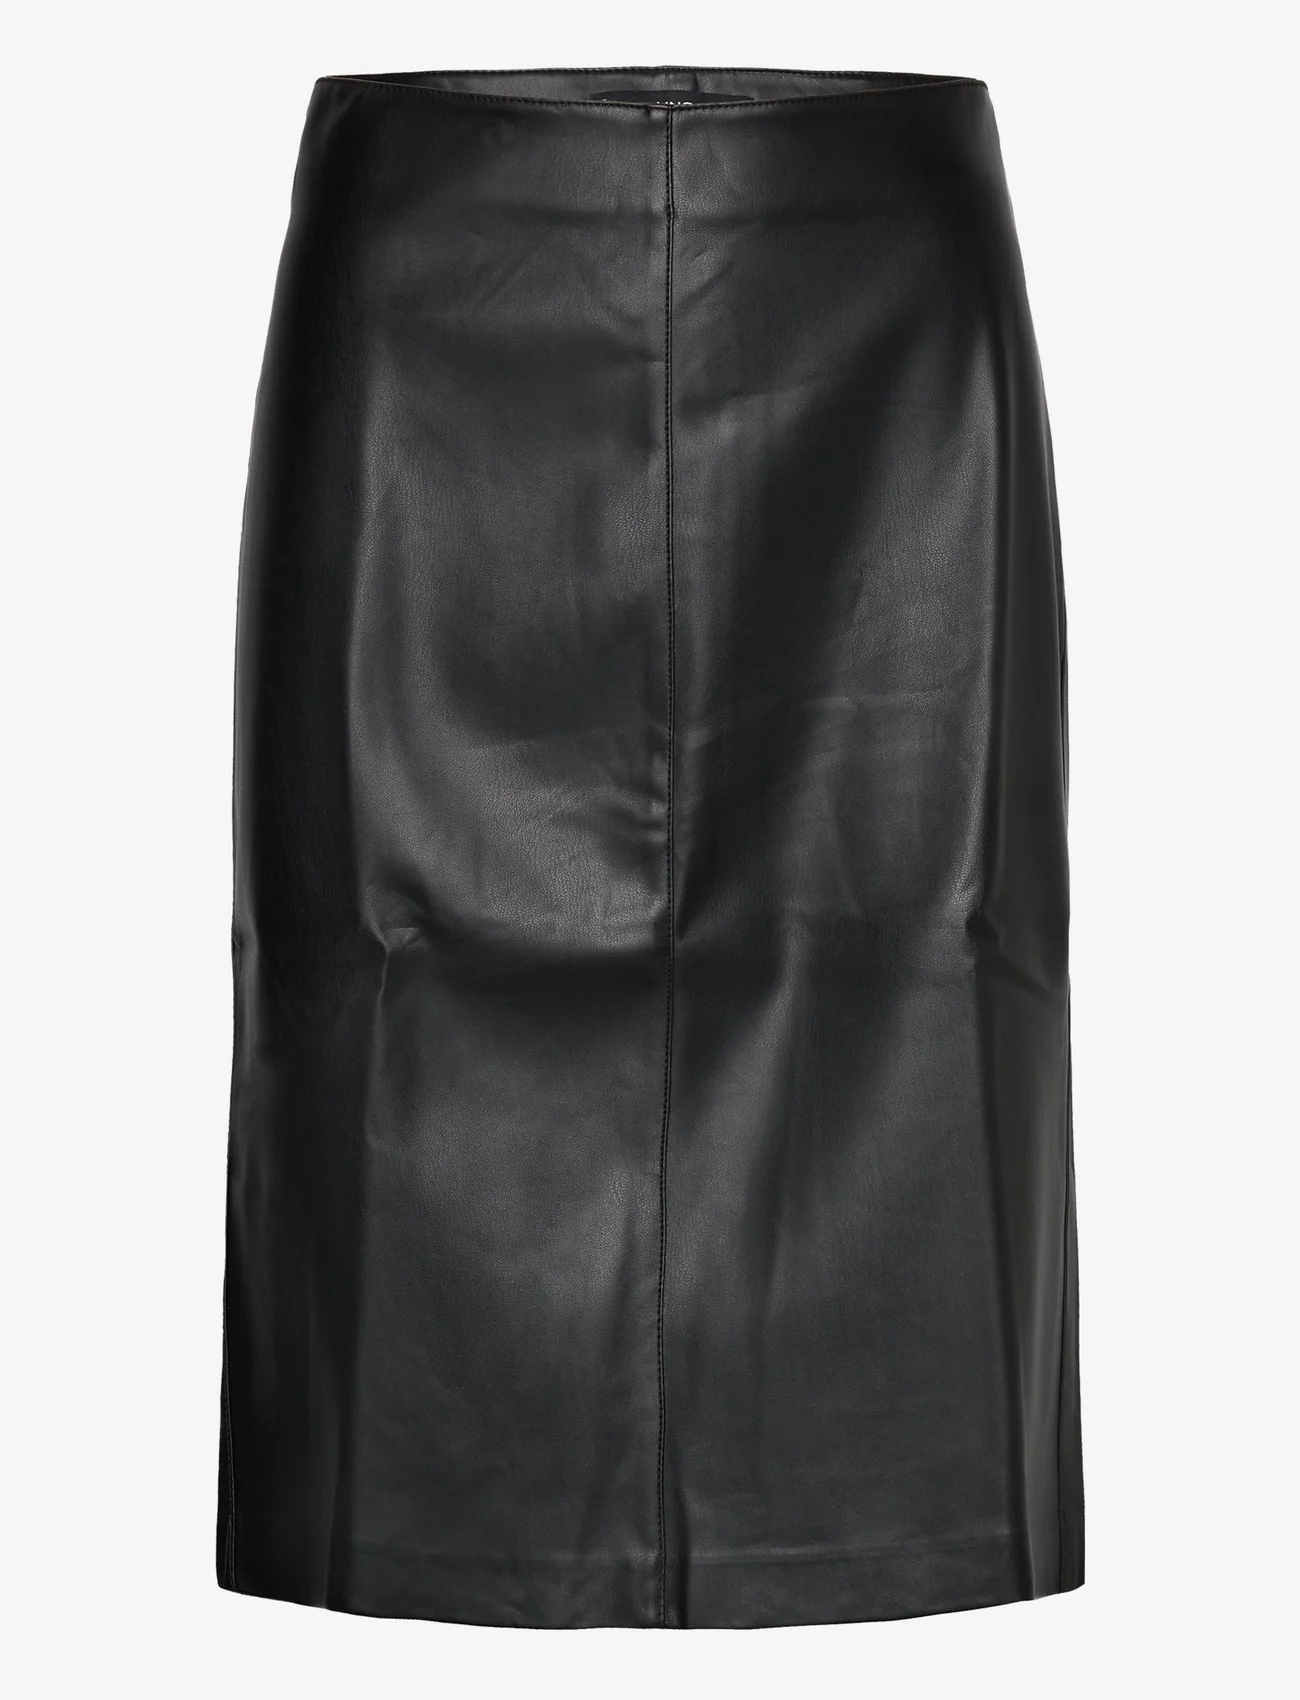 Mango - Faux-leather pencil skirt - laveste priser - black - 0